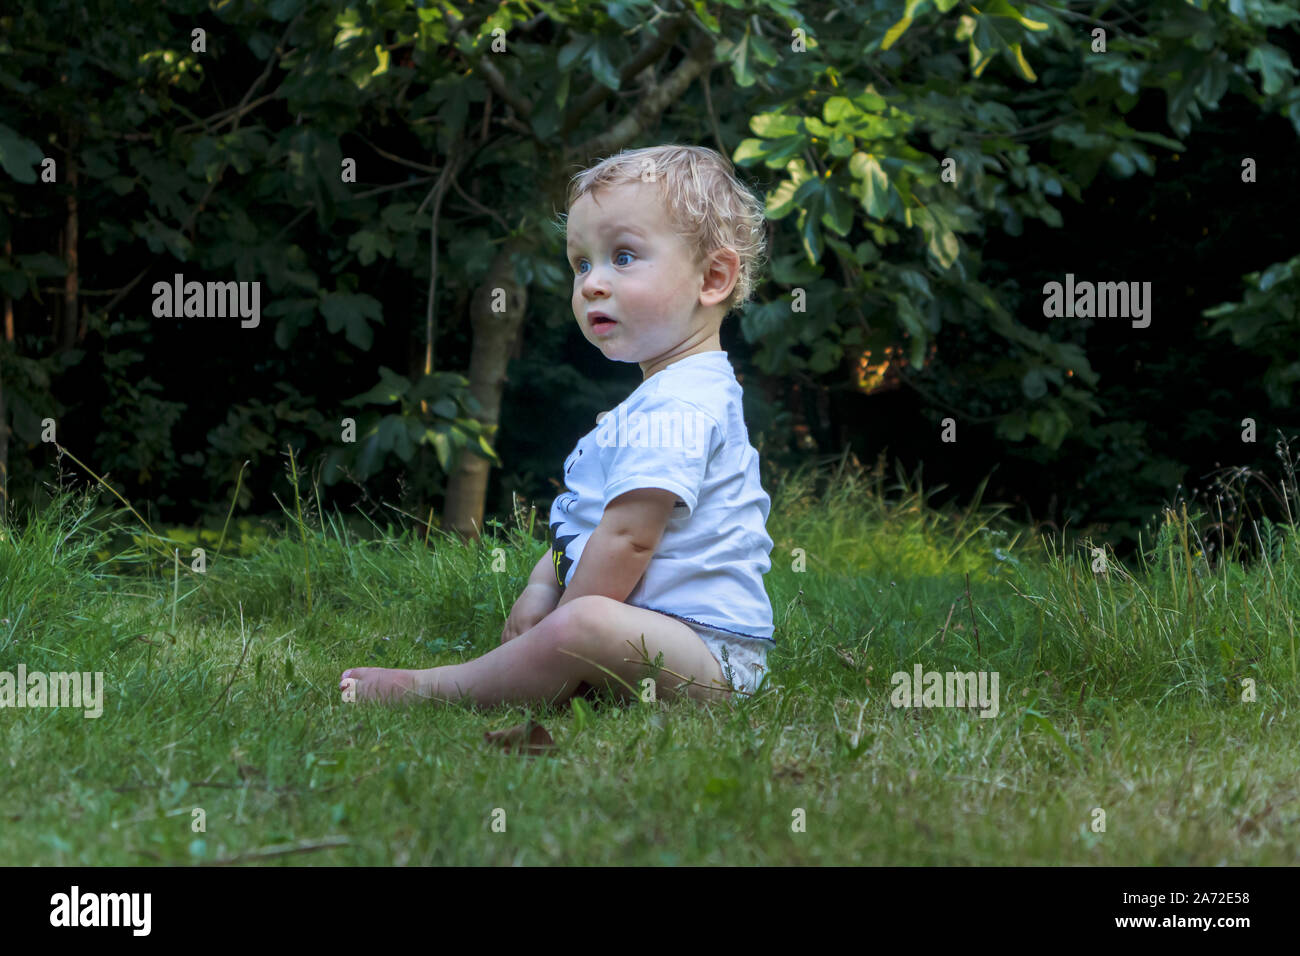 Un petit garçon de race blanche (l'âge de 11 mois) aux yeux bleus, portant un t-shirt blanc haut est assis sur l'herbe dans le jardin avec un regard interrogateur expression Banque D'Images